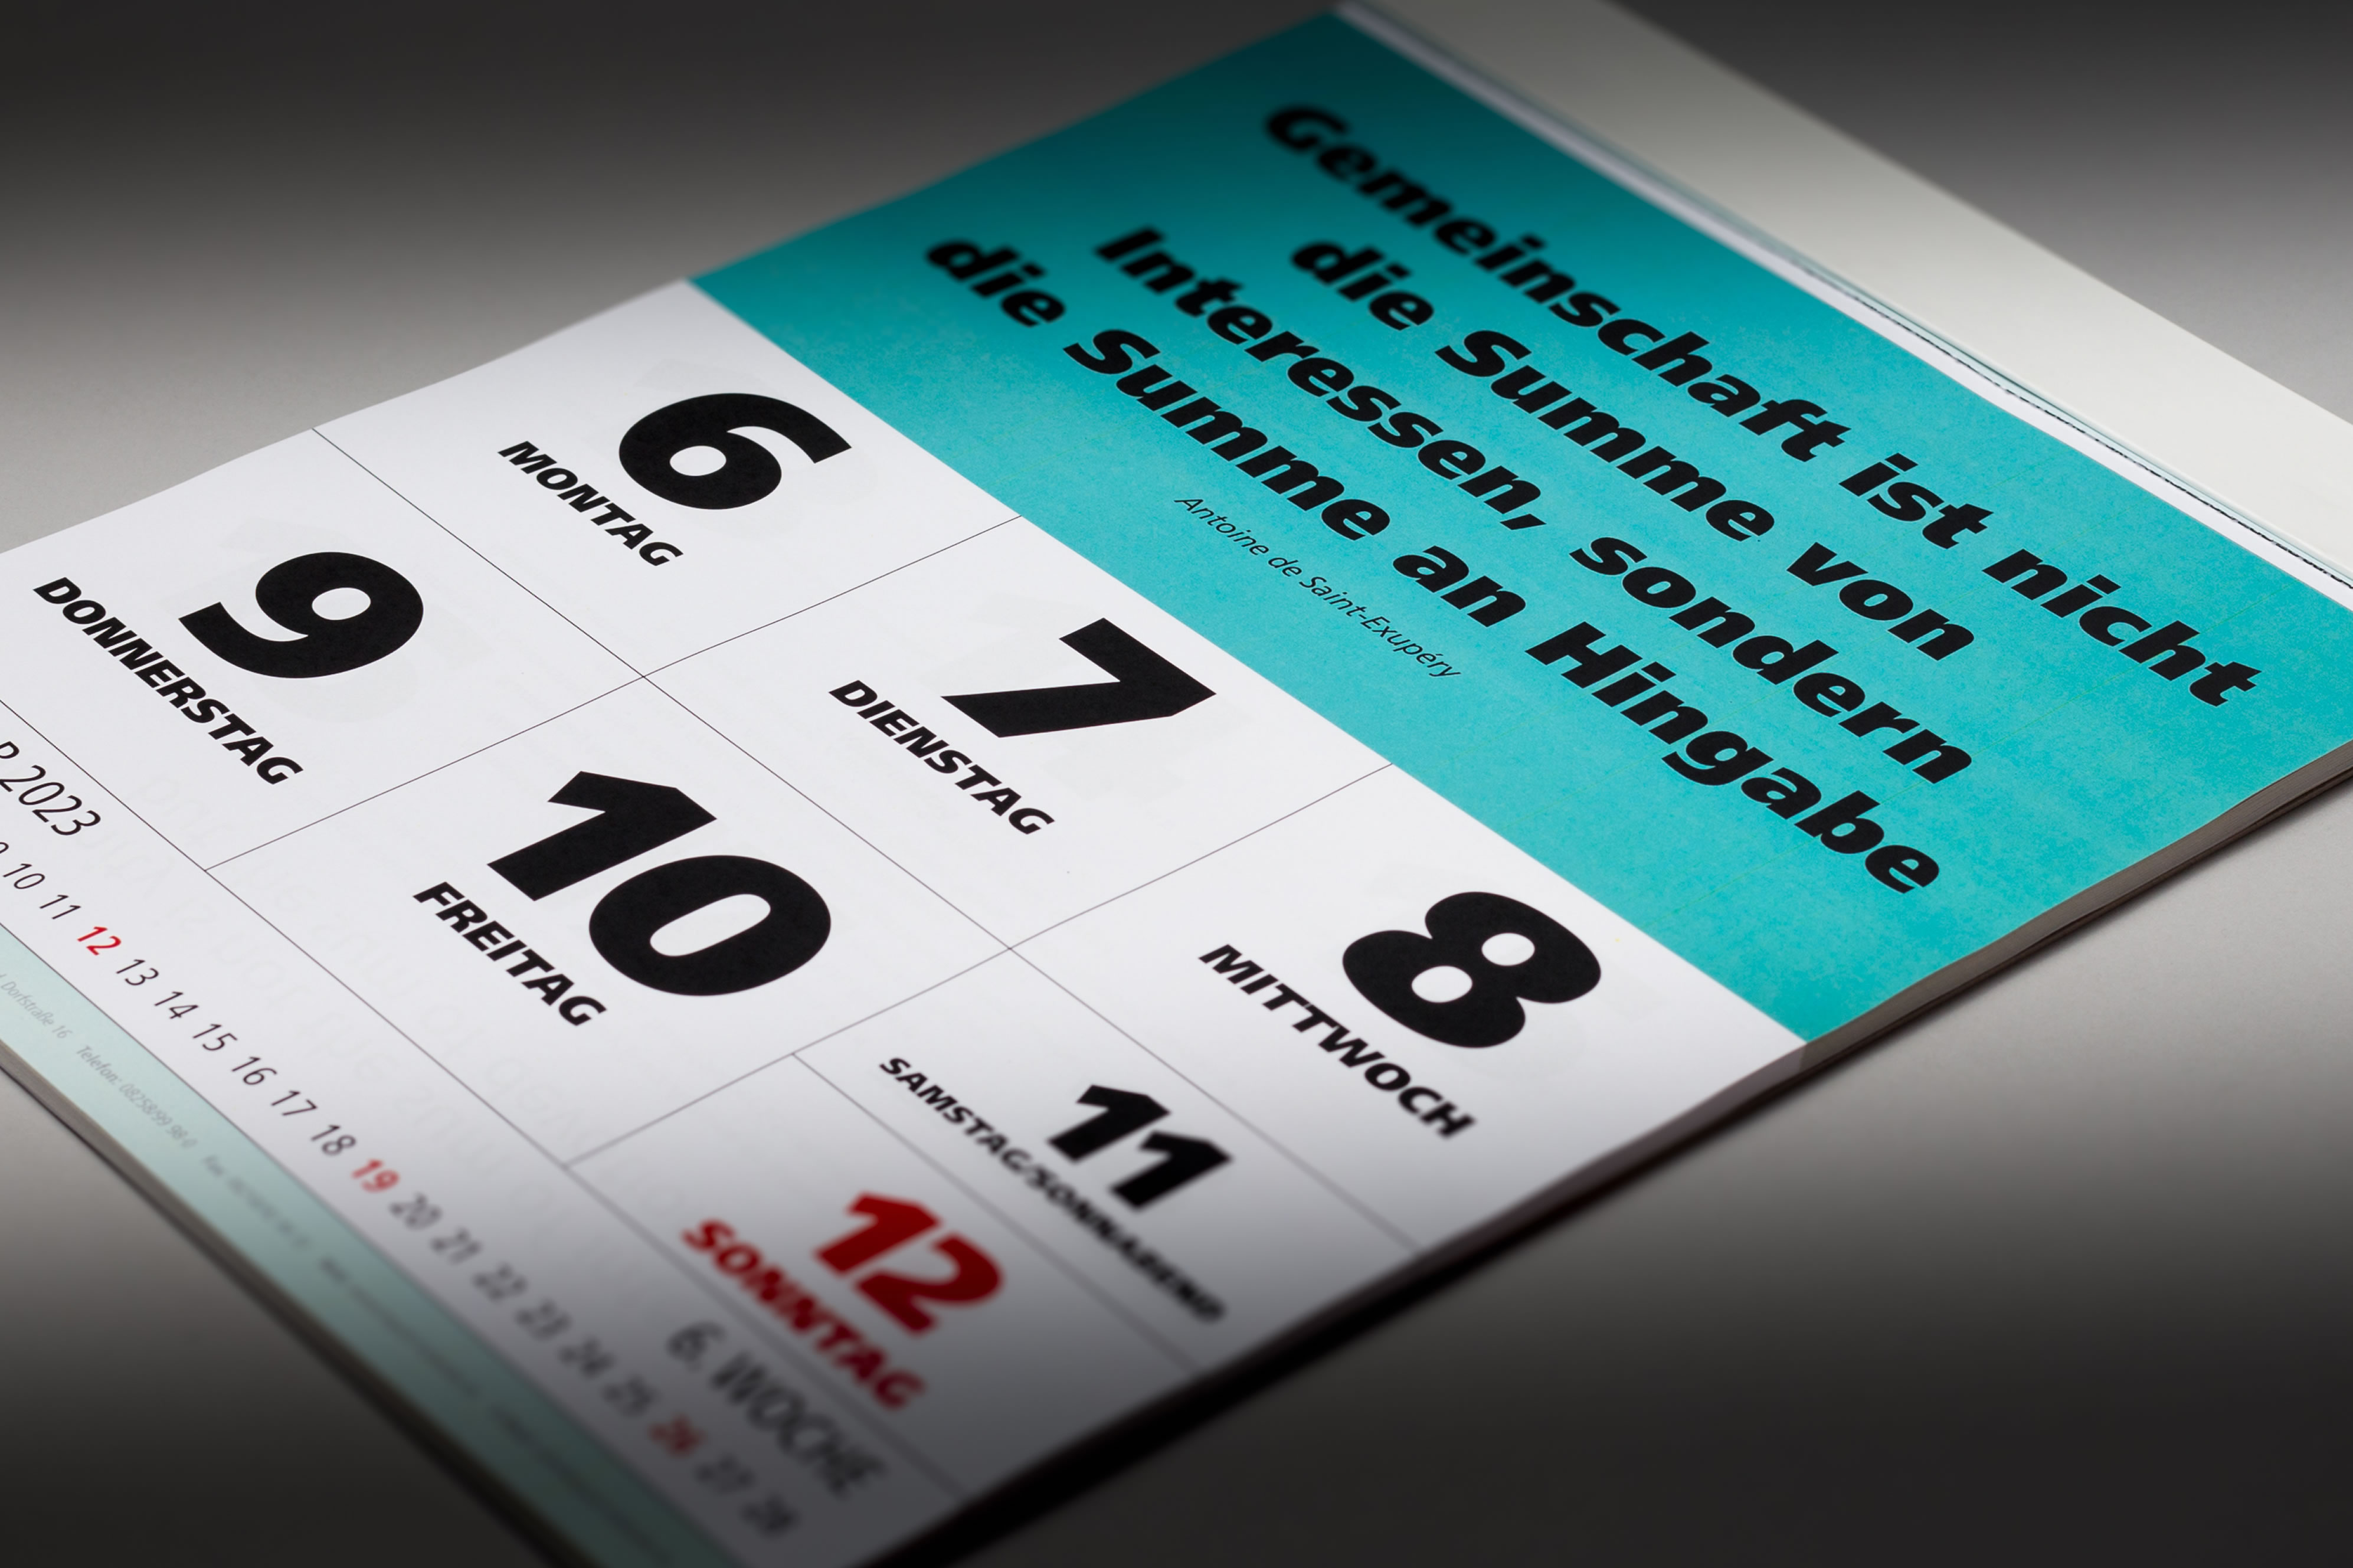 Wochenspruch-Kalender von Impulskalender GmbH - Wandkalender englische Übersetzung Mondphasen Namenstage Autoreninfo